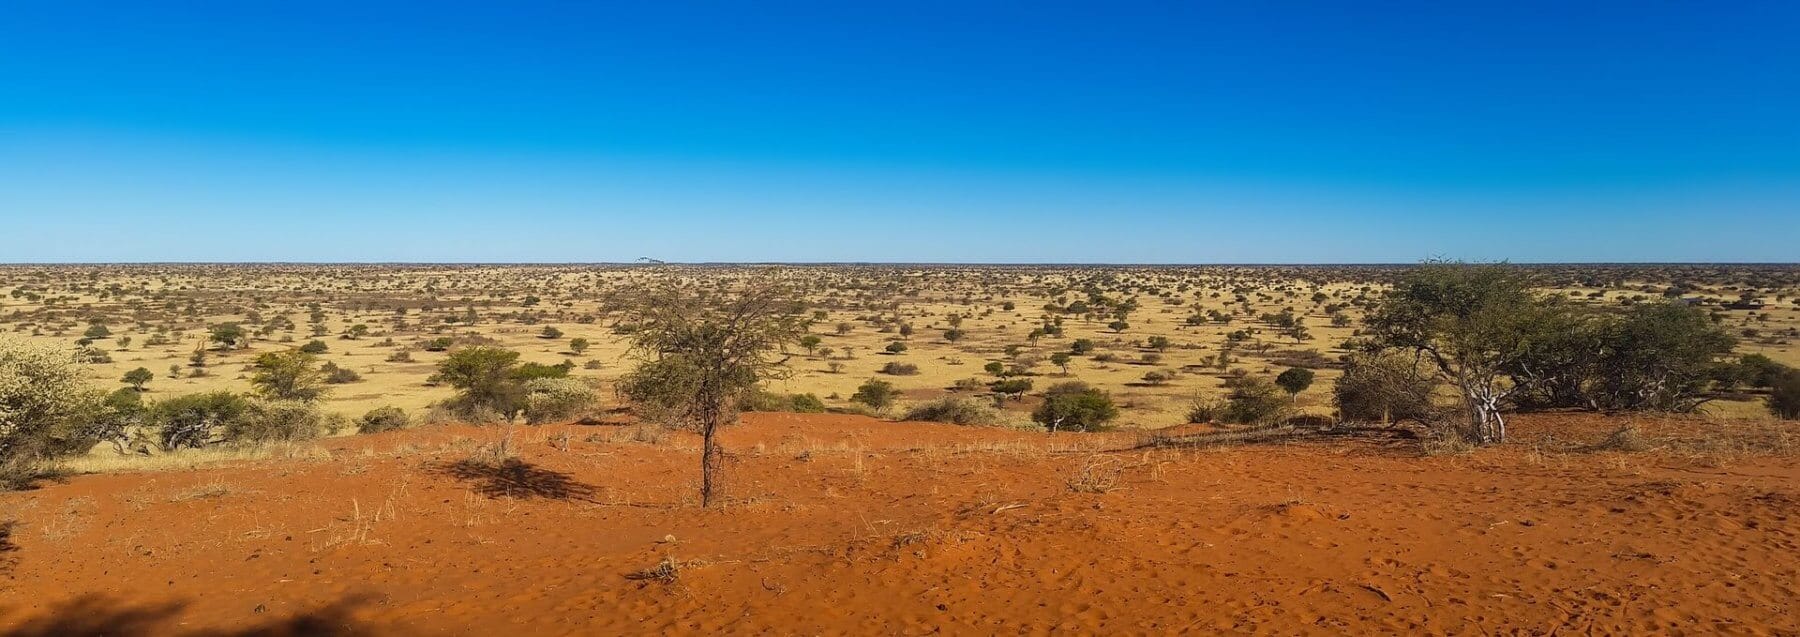 Photo :Kalahari desert -South Africa